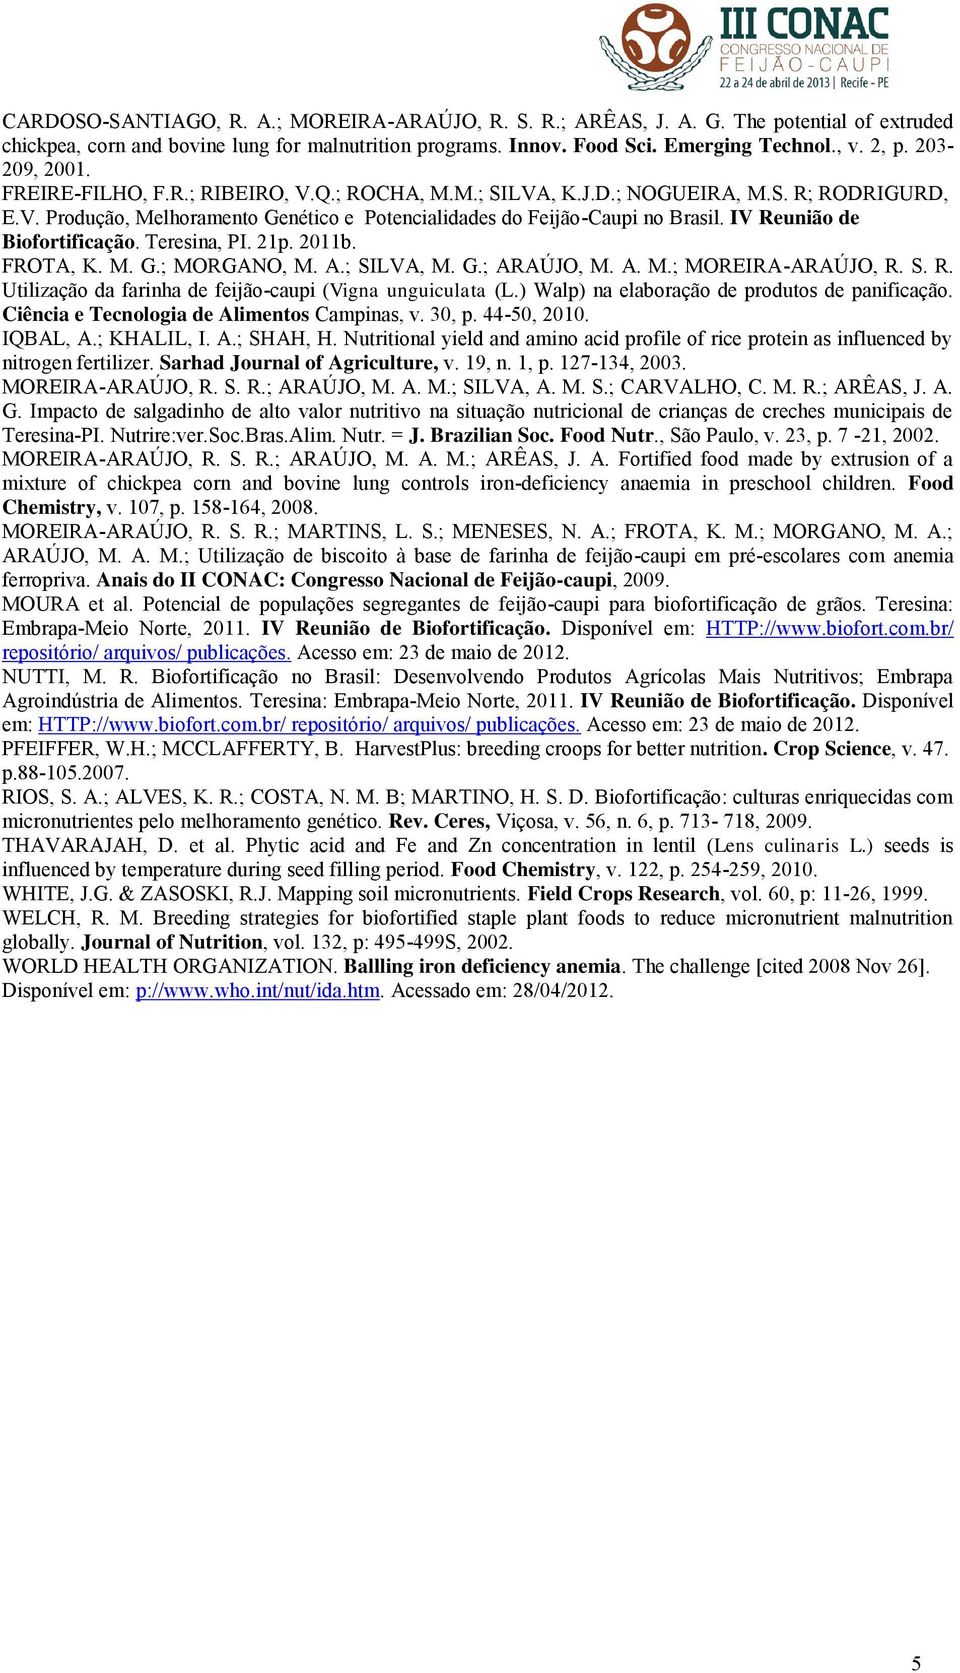 IV Reunião de Biofortificação. Teresina, PI. 21p. 2011b. FROTA, K. M. G.; MORGANO, M. A.; SILVA, M. G.; ARAÚJO, M. A. M.; MOREIRA-ARAÚJO, R. S. R. Utilização da farinha de feijão-caupi (Vigna unguiculata (L.